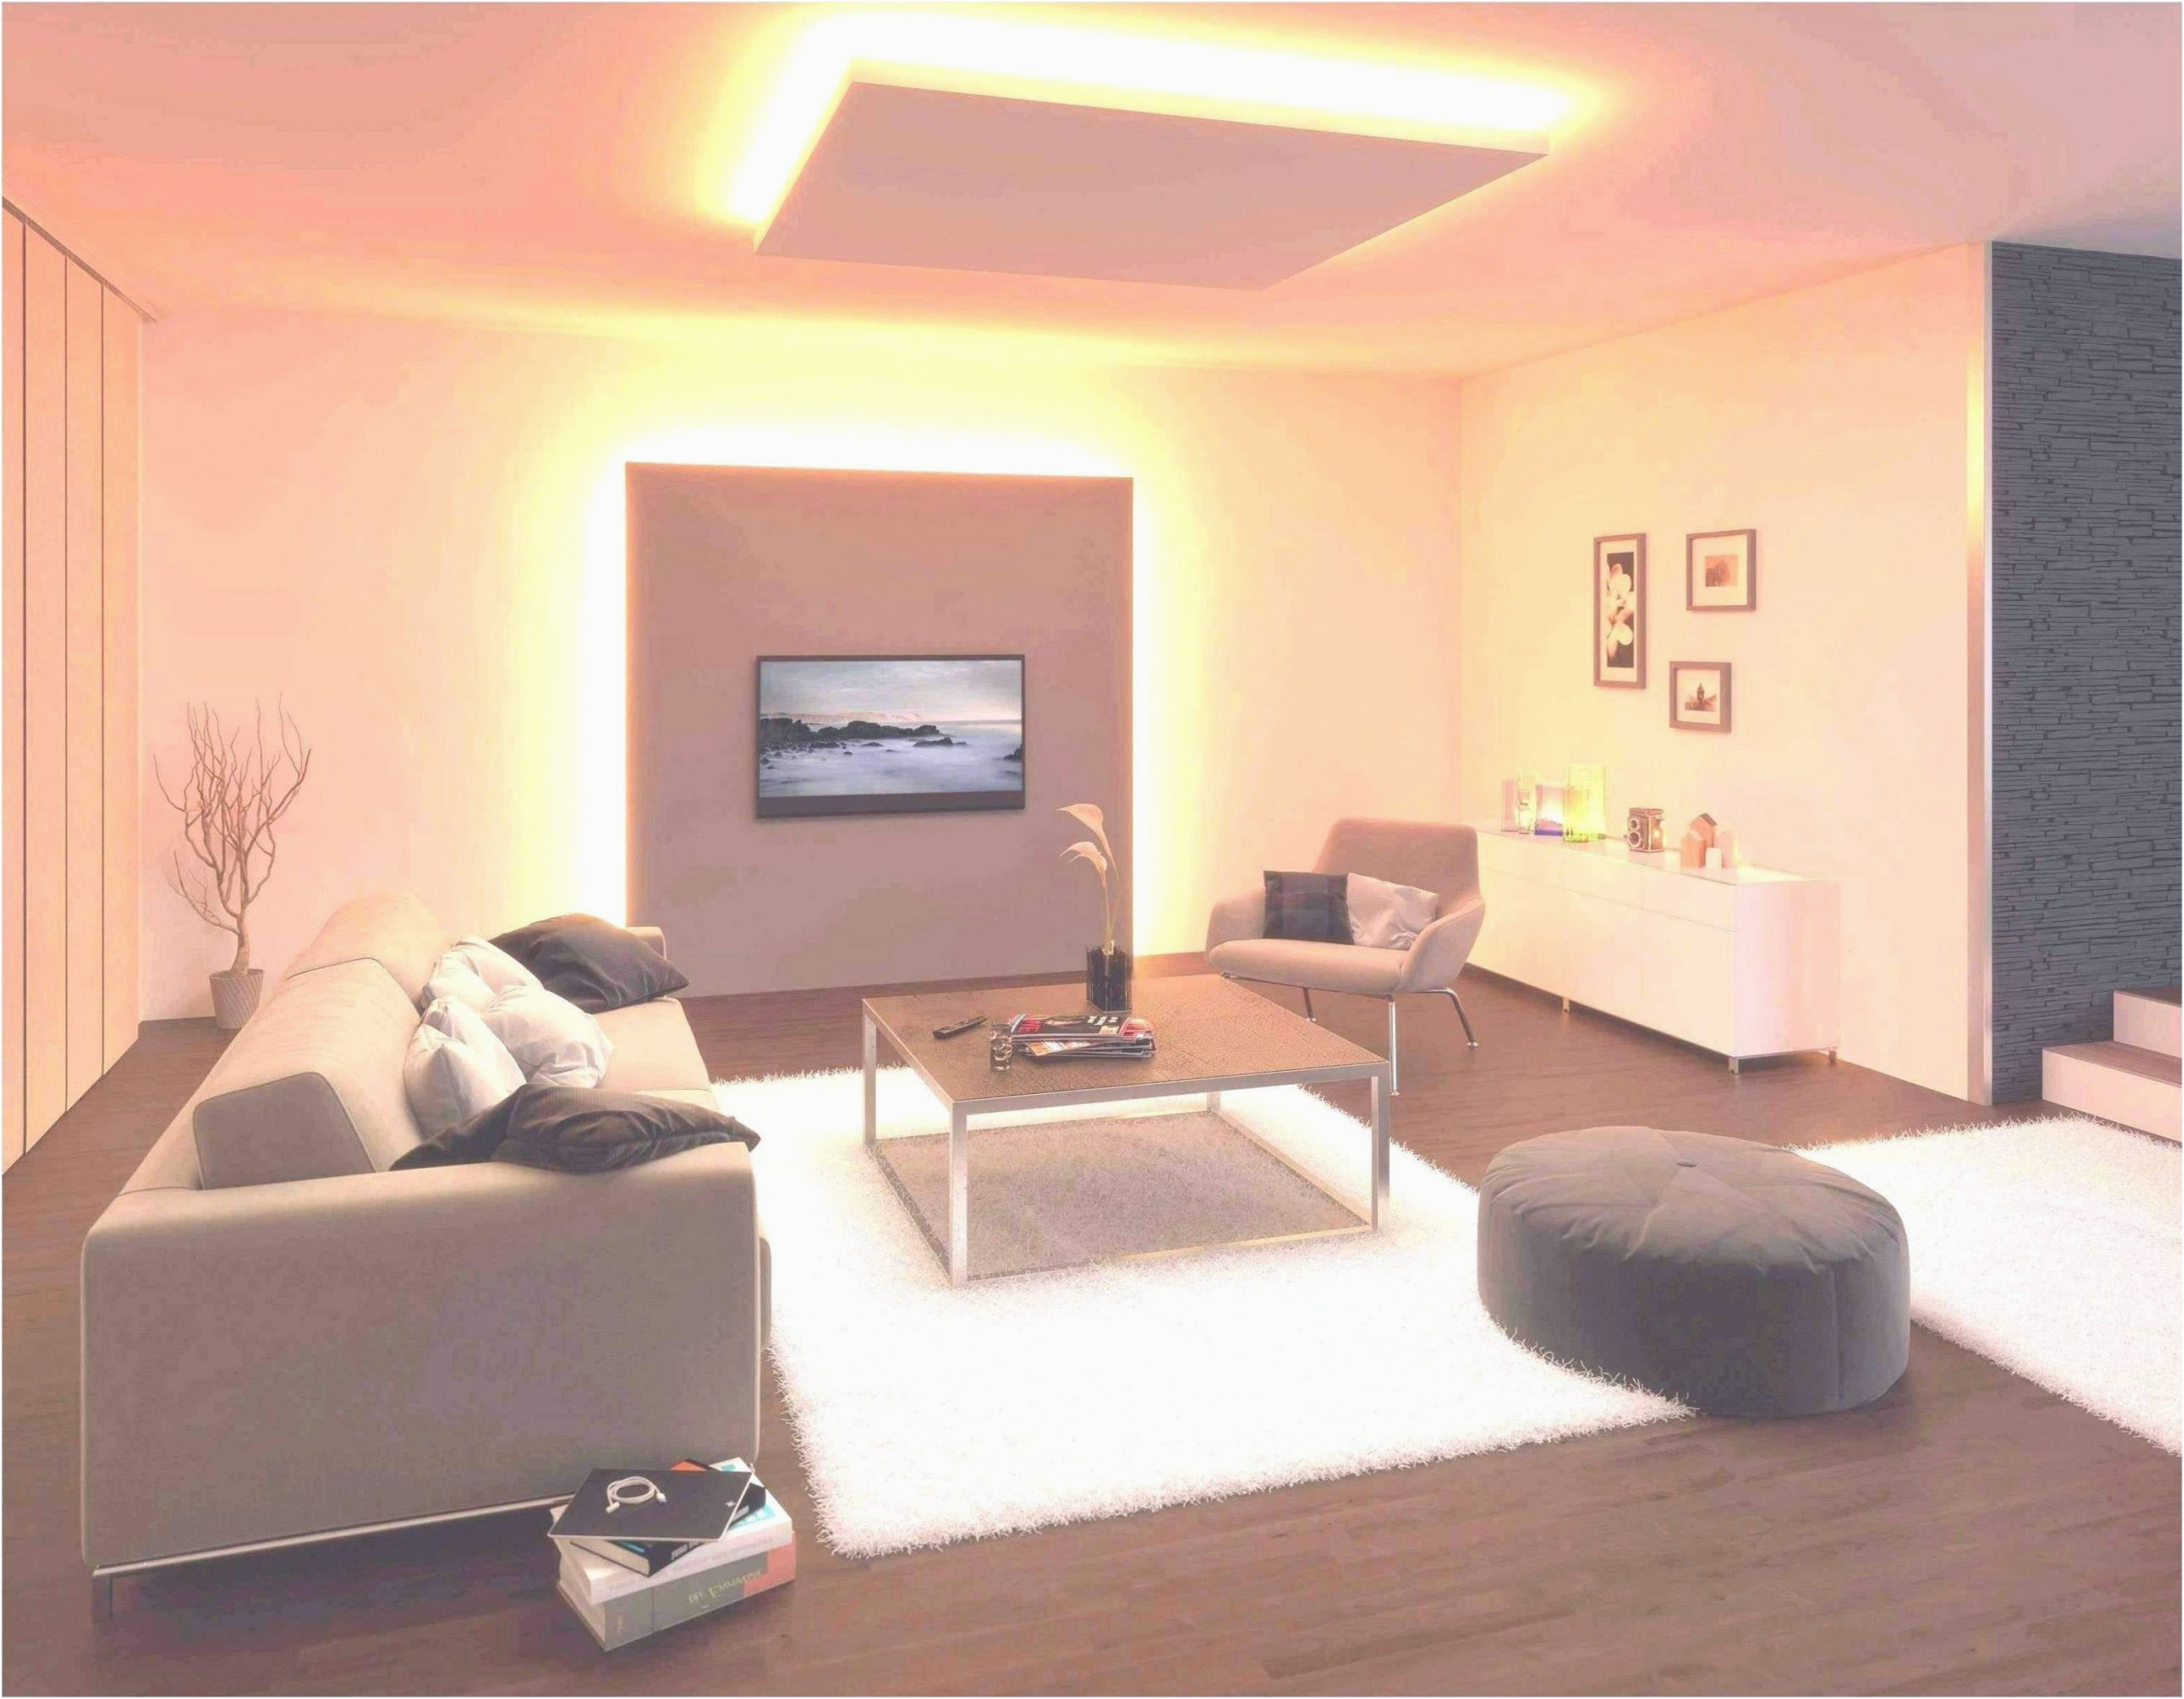 wohnzimmer beleuchtung modern das beste von genial wohnzimmer beleuchtung modern of wohnzimmer beleuchtung modern scaled